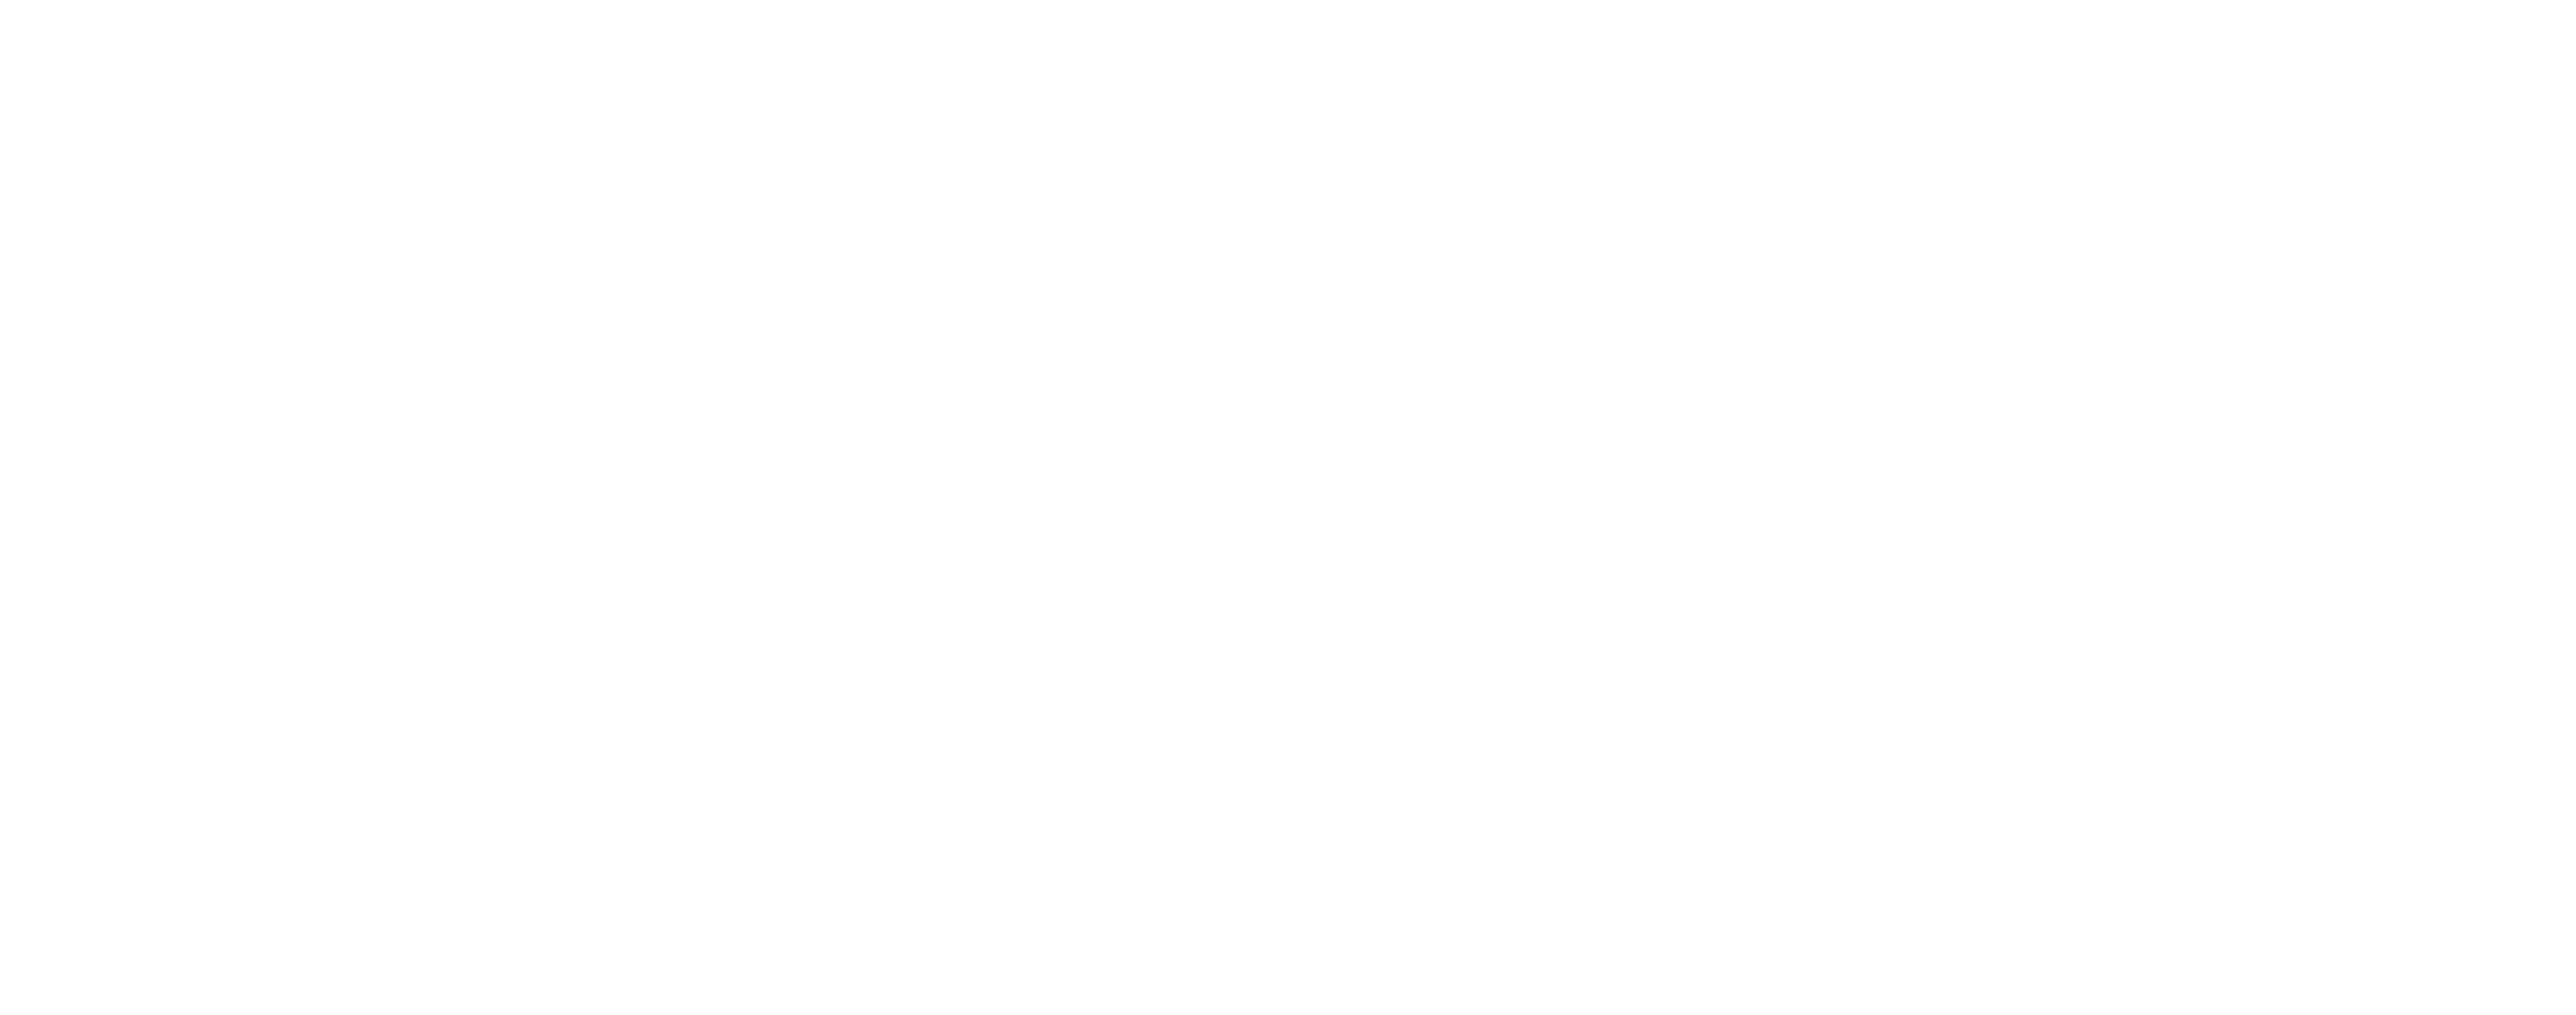 bluestone real estate